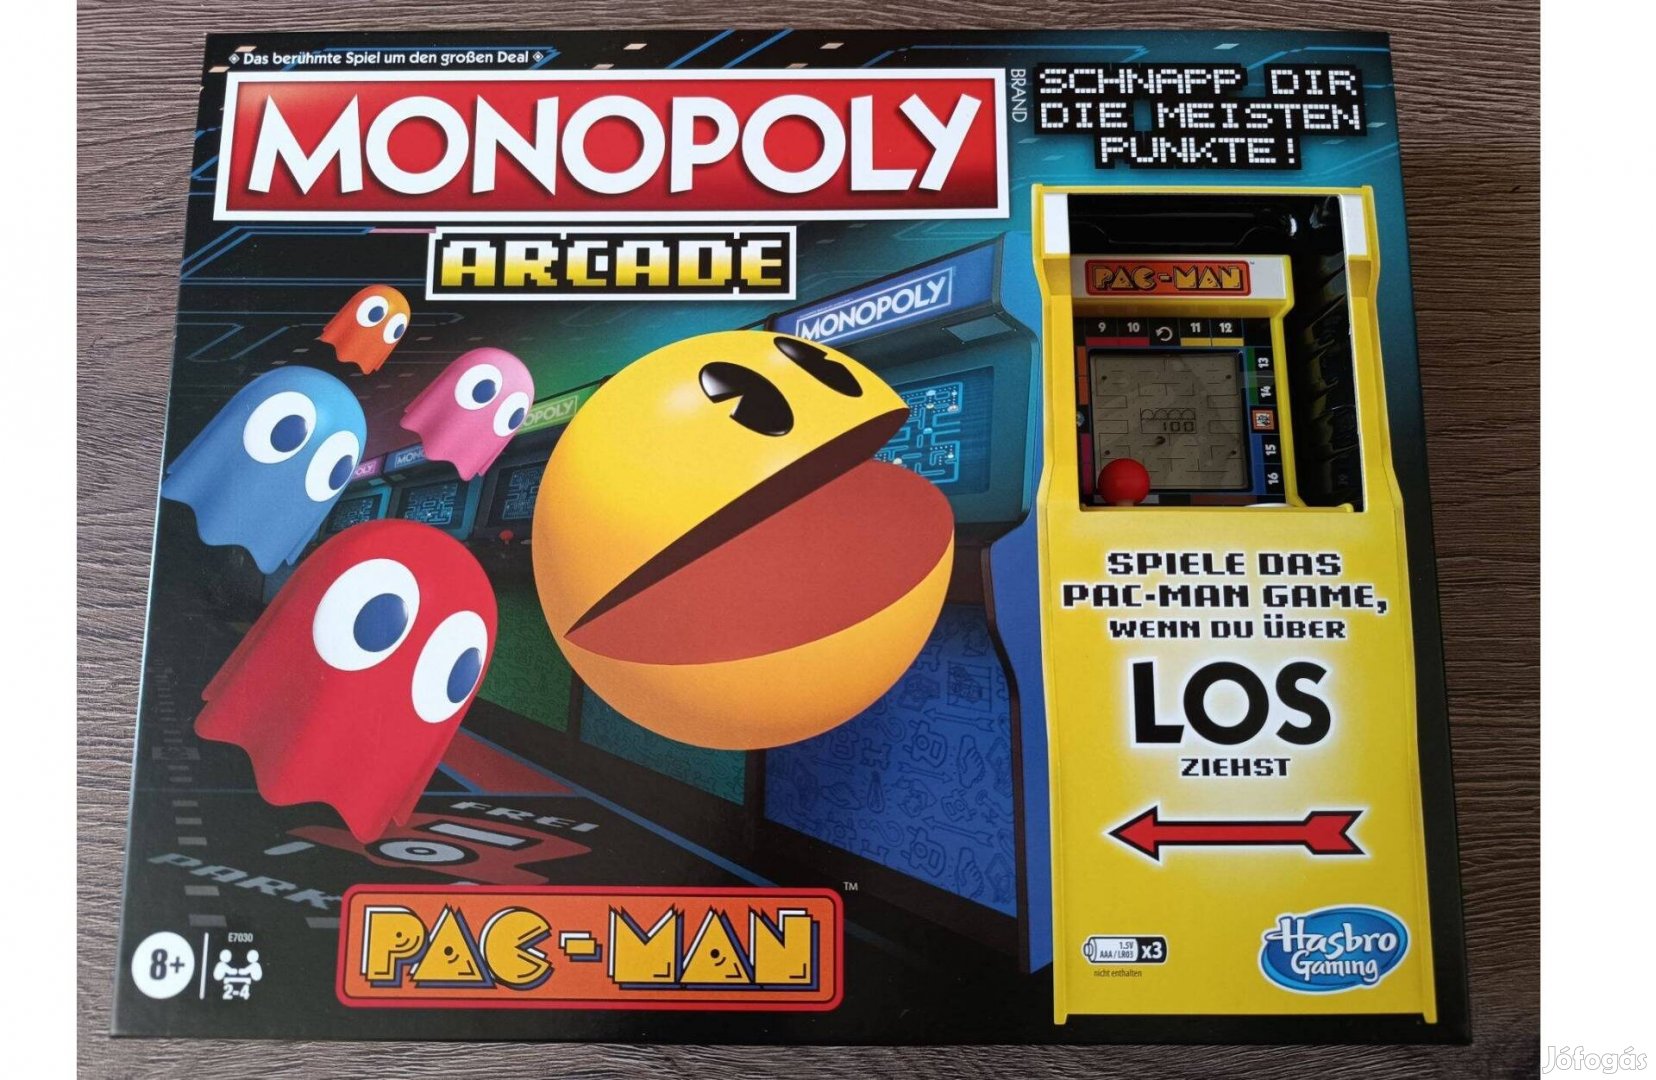 Monopoly Arcade Pac-Man társasjáték (Hasbro, 2020) német és bontatlan